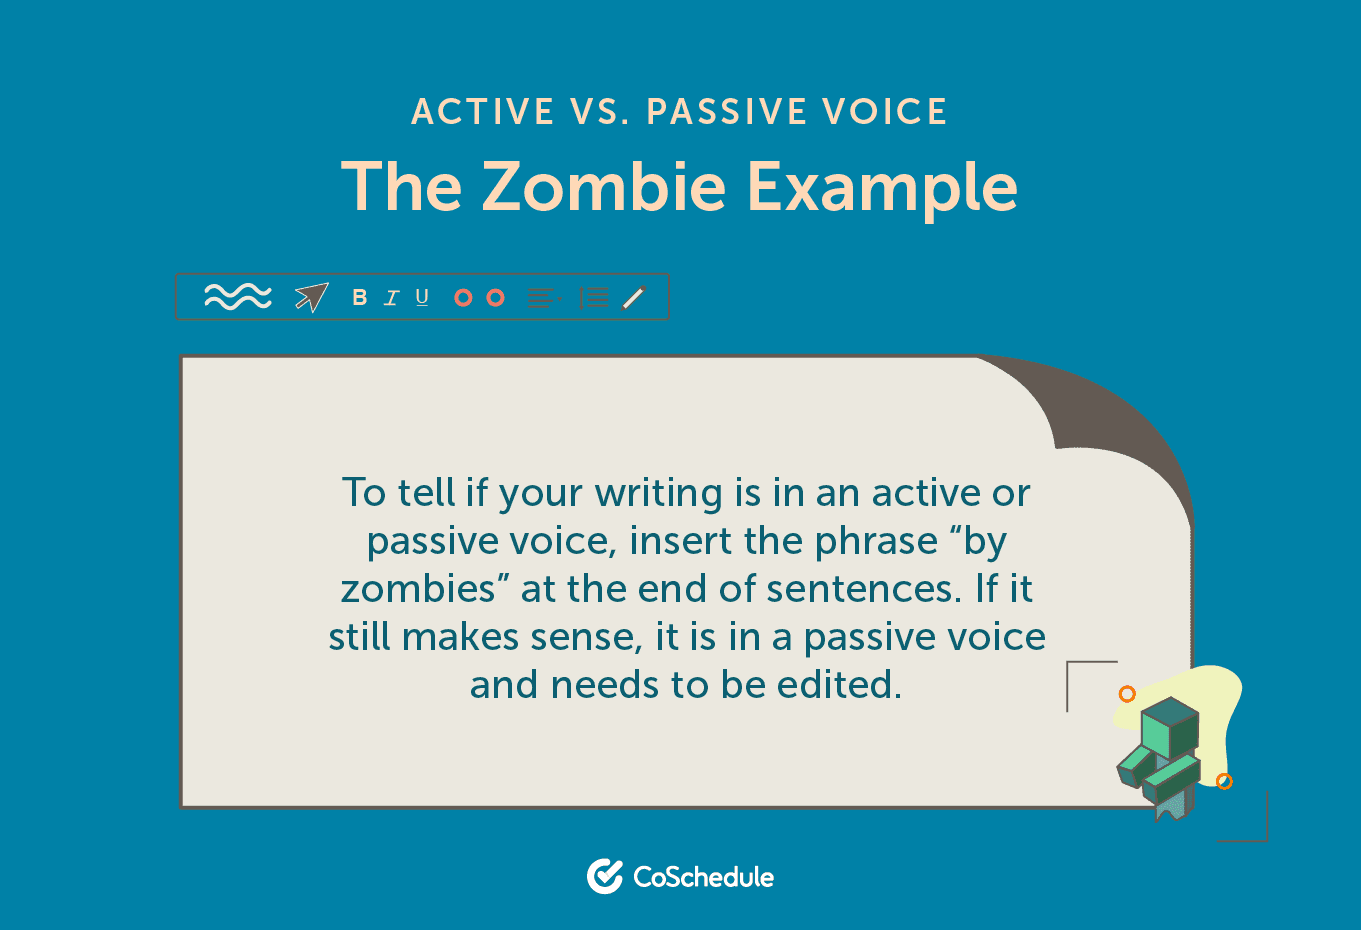 The zombie method to determine active vs. passive voice